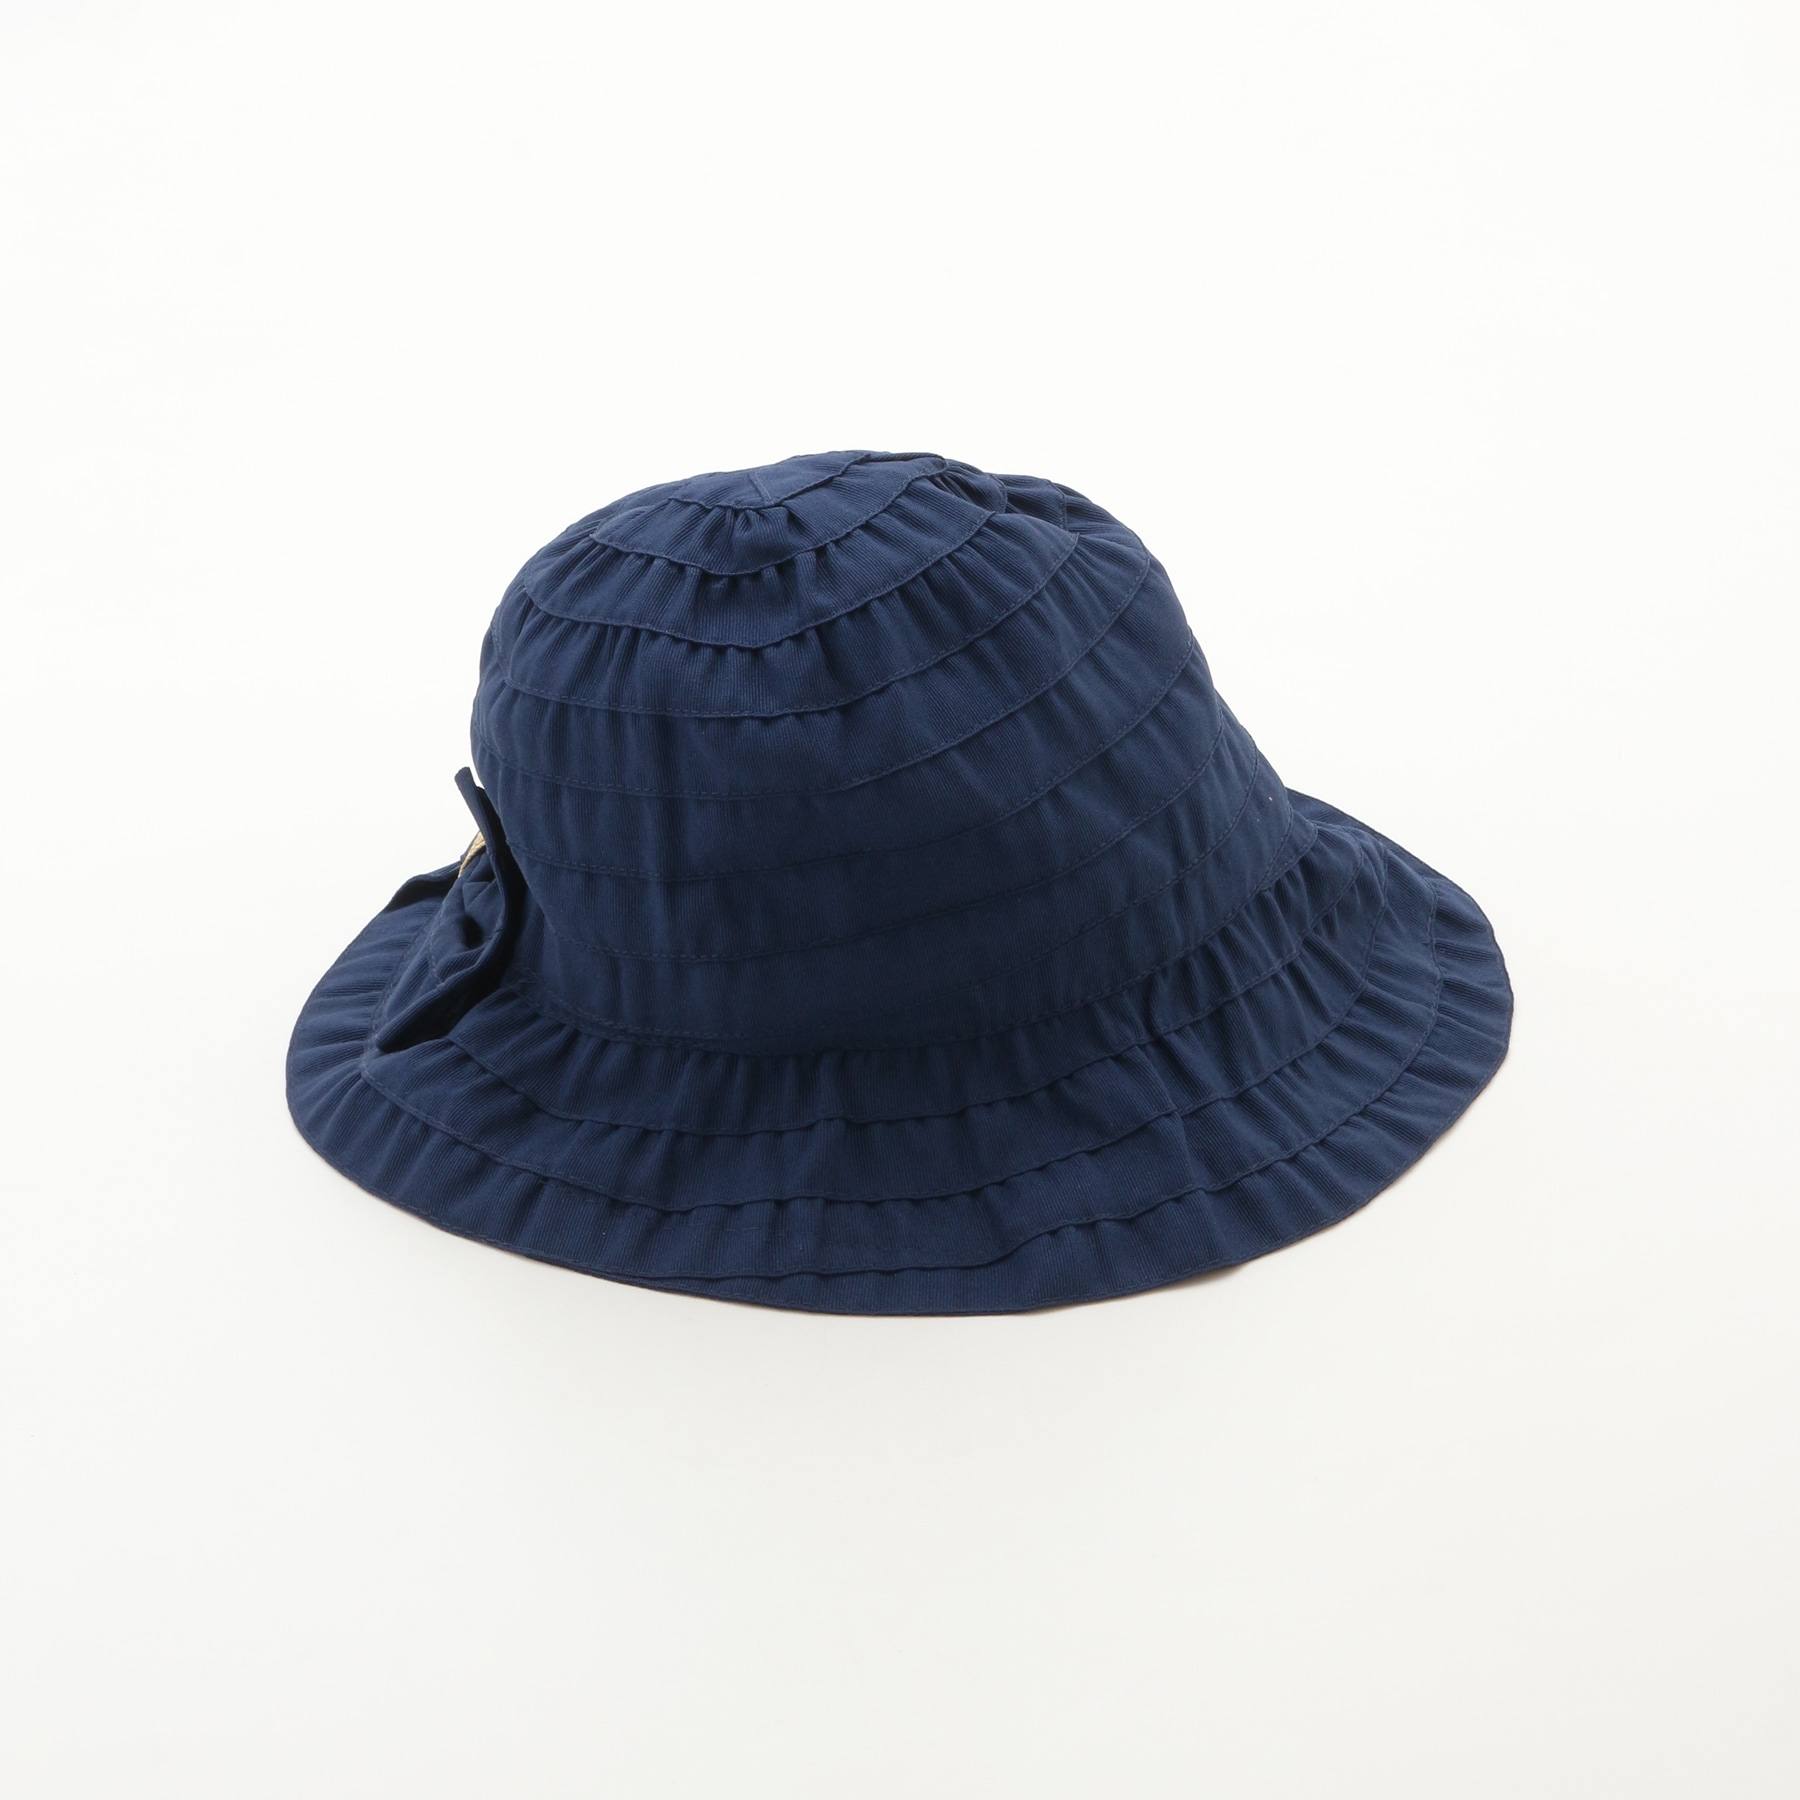 オフプライスストア(ファッショングッズ)(OFF PRICE STORE(Fashion Goods))のシゲマツ サイズ調整機能付きデザイン帽子2